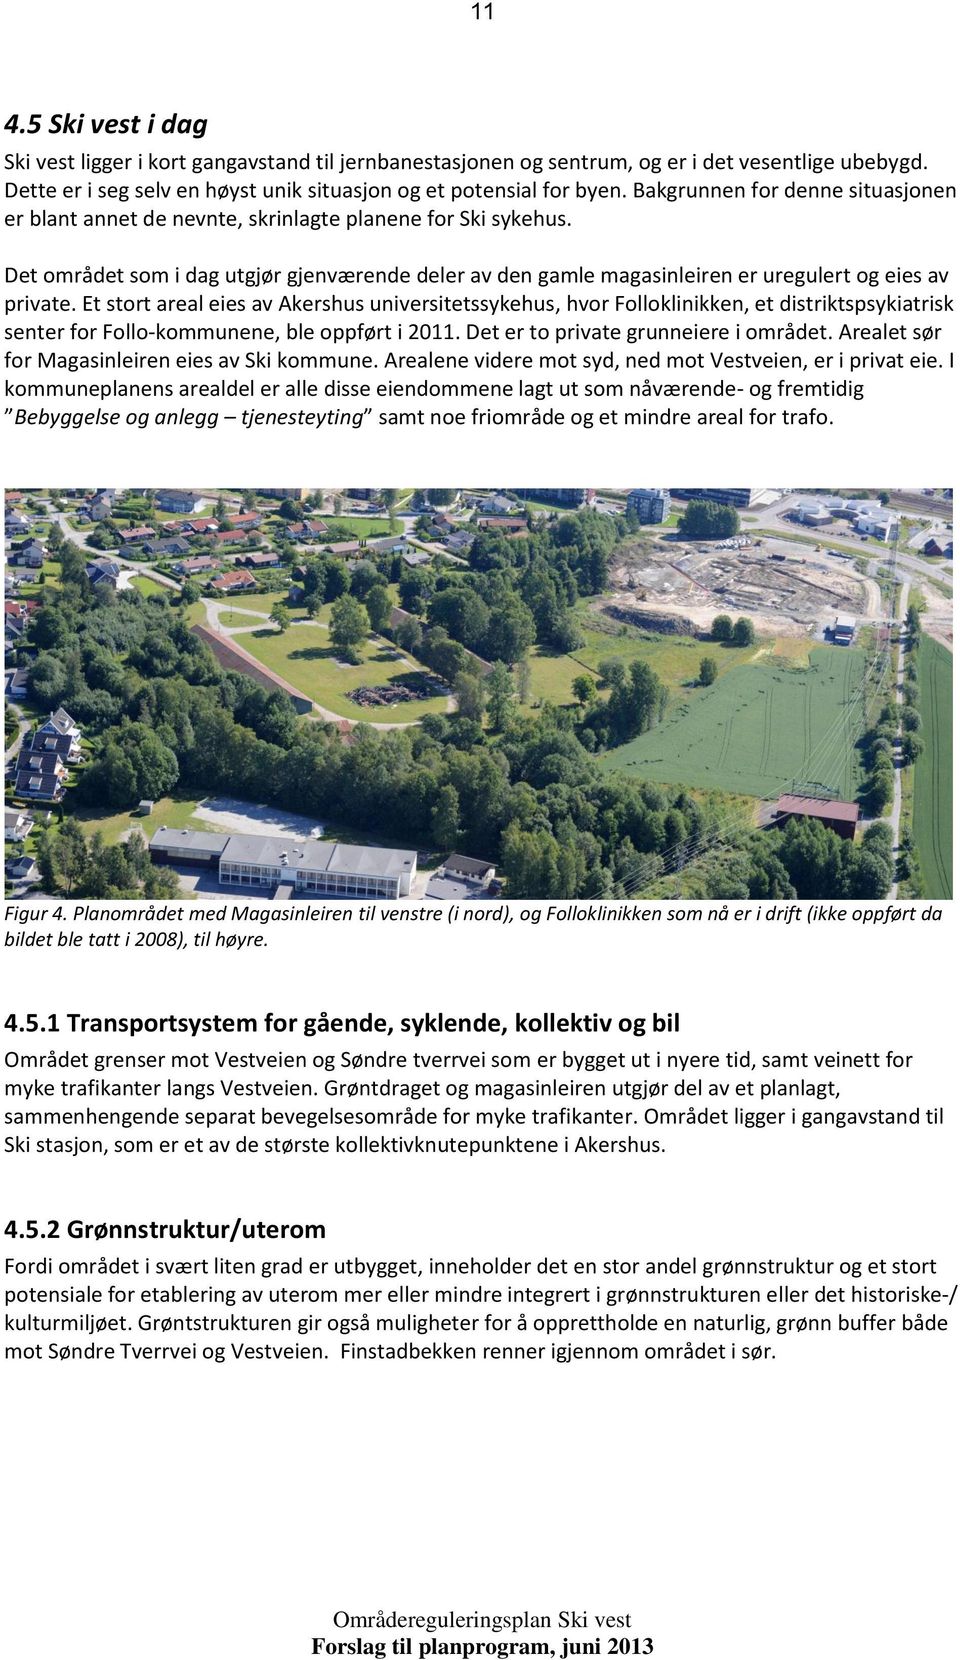 Et strt areal eies av Akershus universitetssykehus, hvr Fllklinikken, et distriktspsykiatrisk senter fr Fll-kmmunene, ble ppført i 2011. Det er t private grunneiere i mrådet.